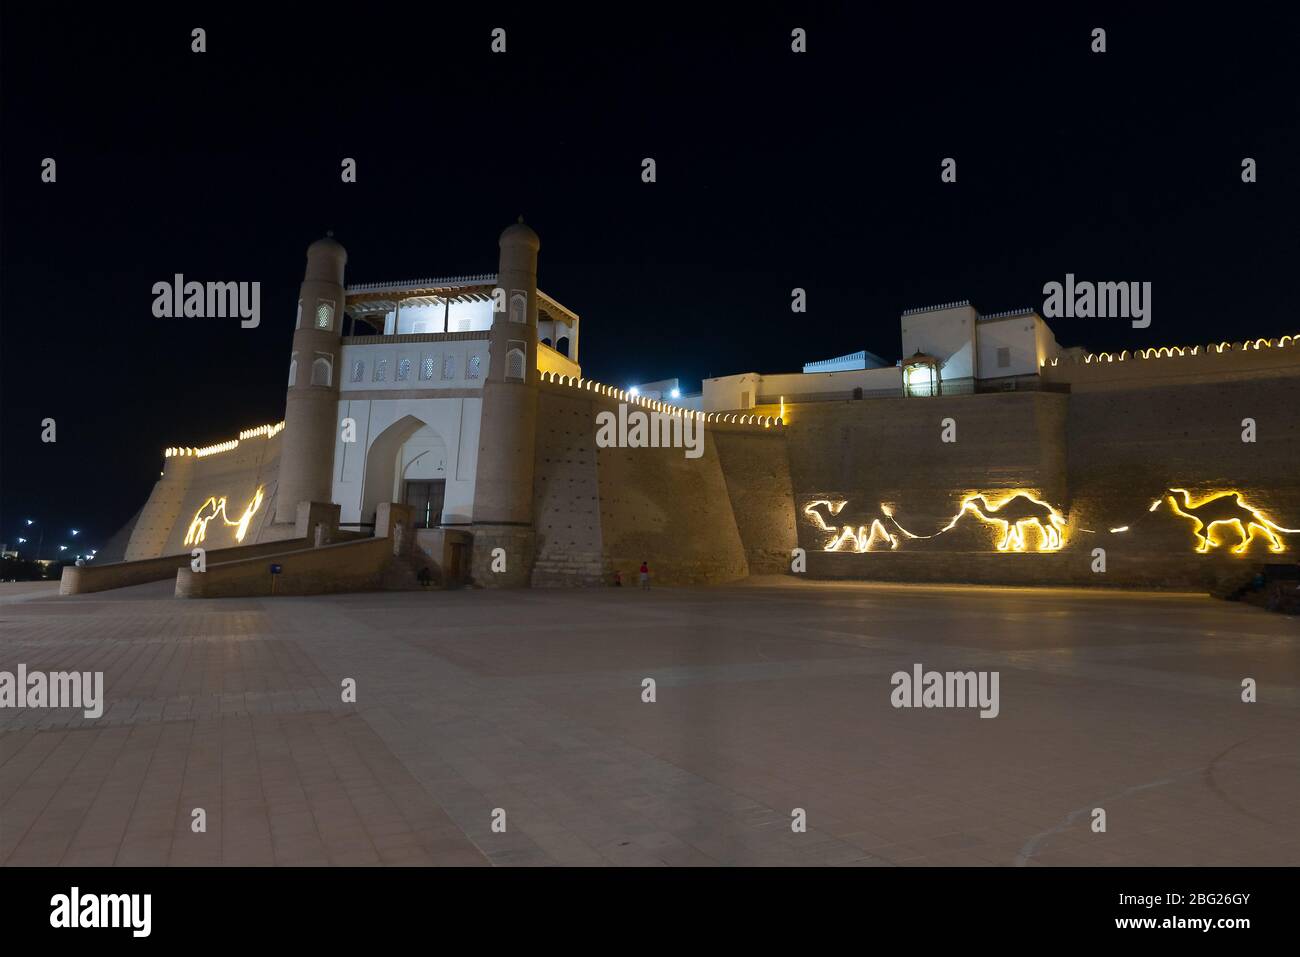 Mauer der Buchara-Festung (Arche) in Buchara, Usbekistan bei Nacht. Massive Festung genannt Arche von Buchara. Befestigte Ziegelwand beleuchtet. Stockfoto